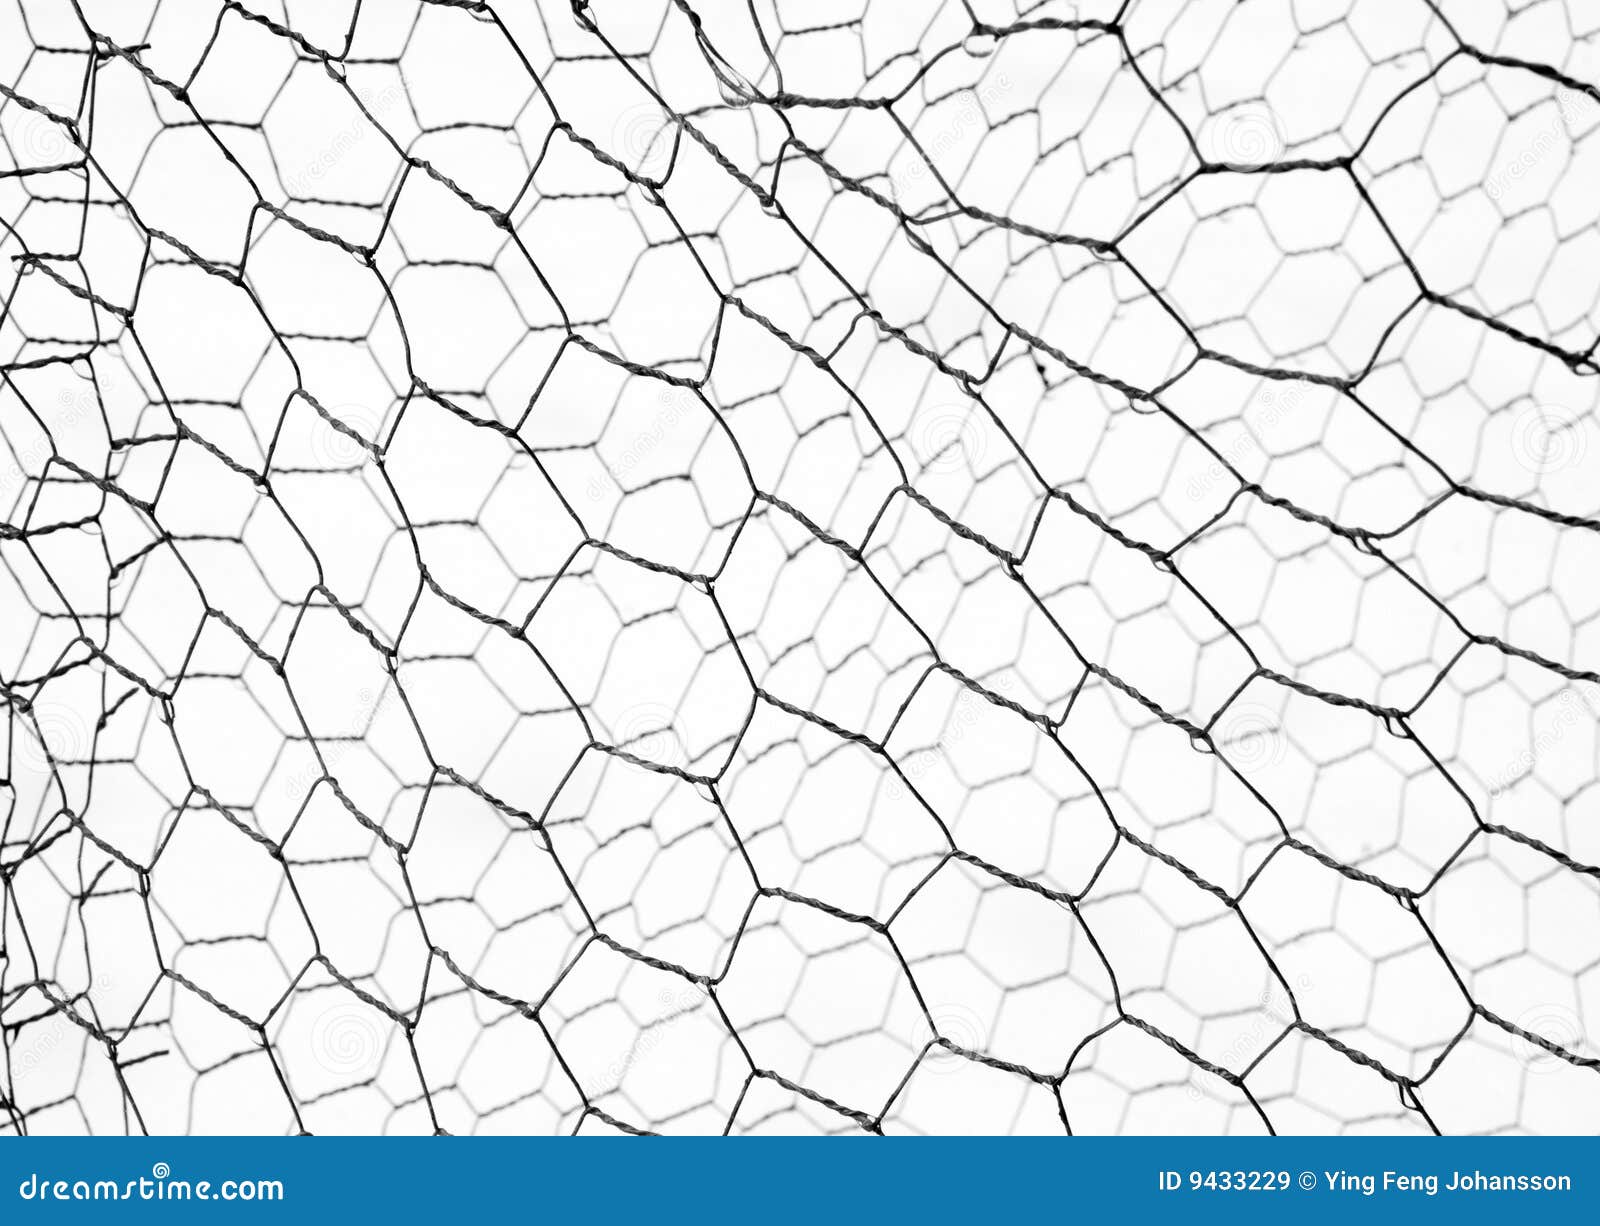 Chicken net stock image. Image of white, hexagon, strength - 9433229